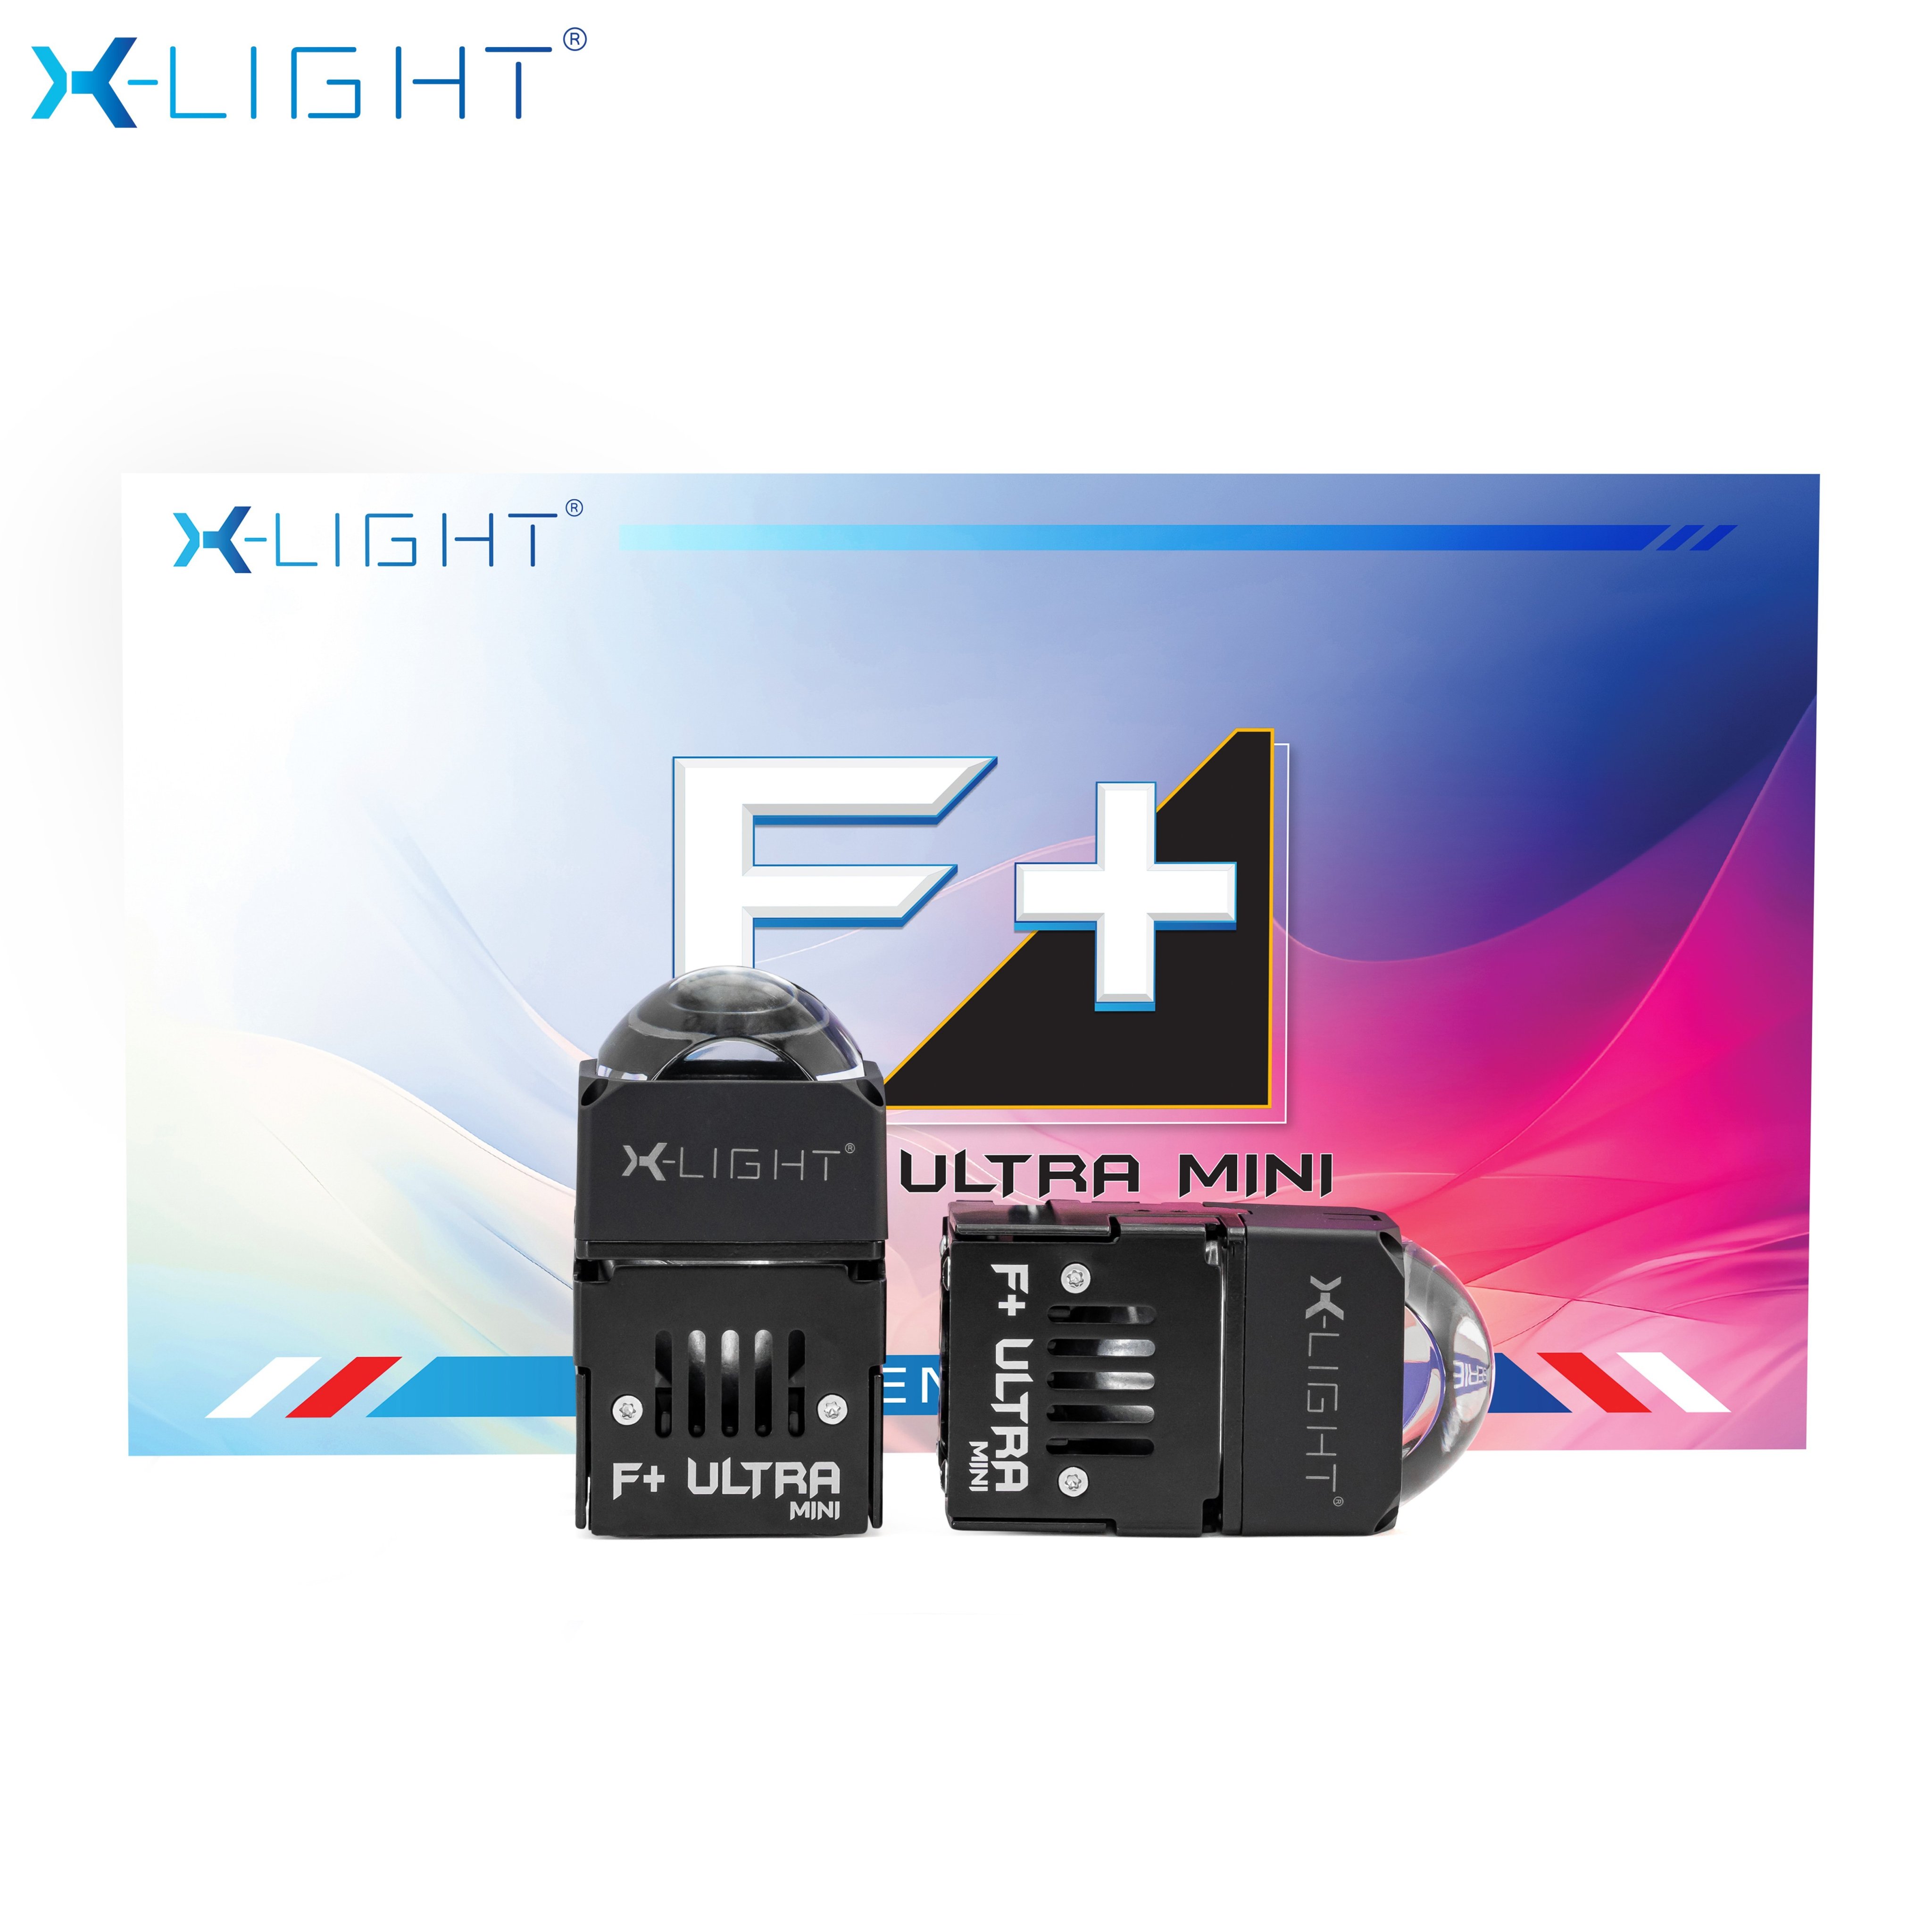 BI LASER X-LIGHT F+ ULTRA MINI